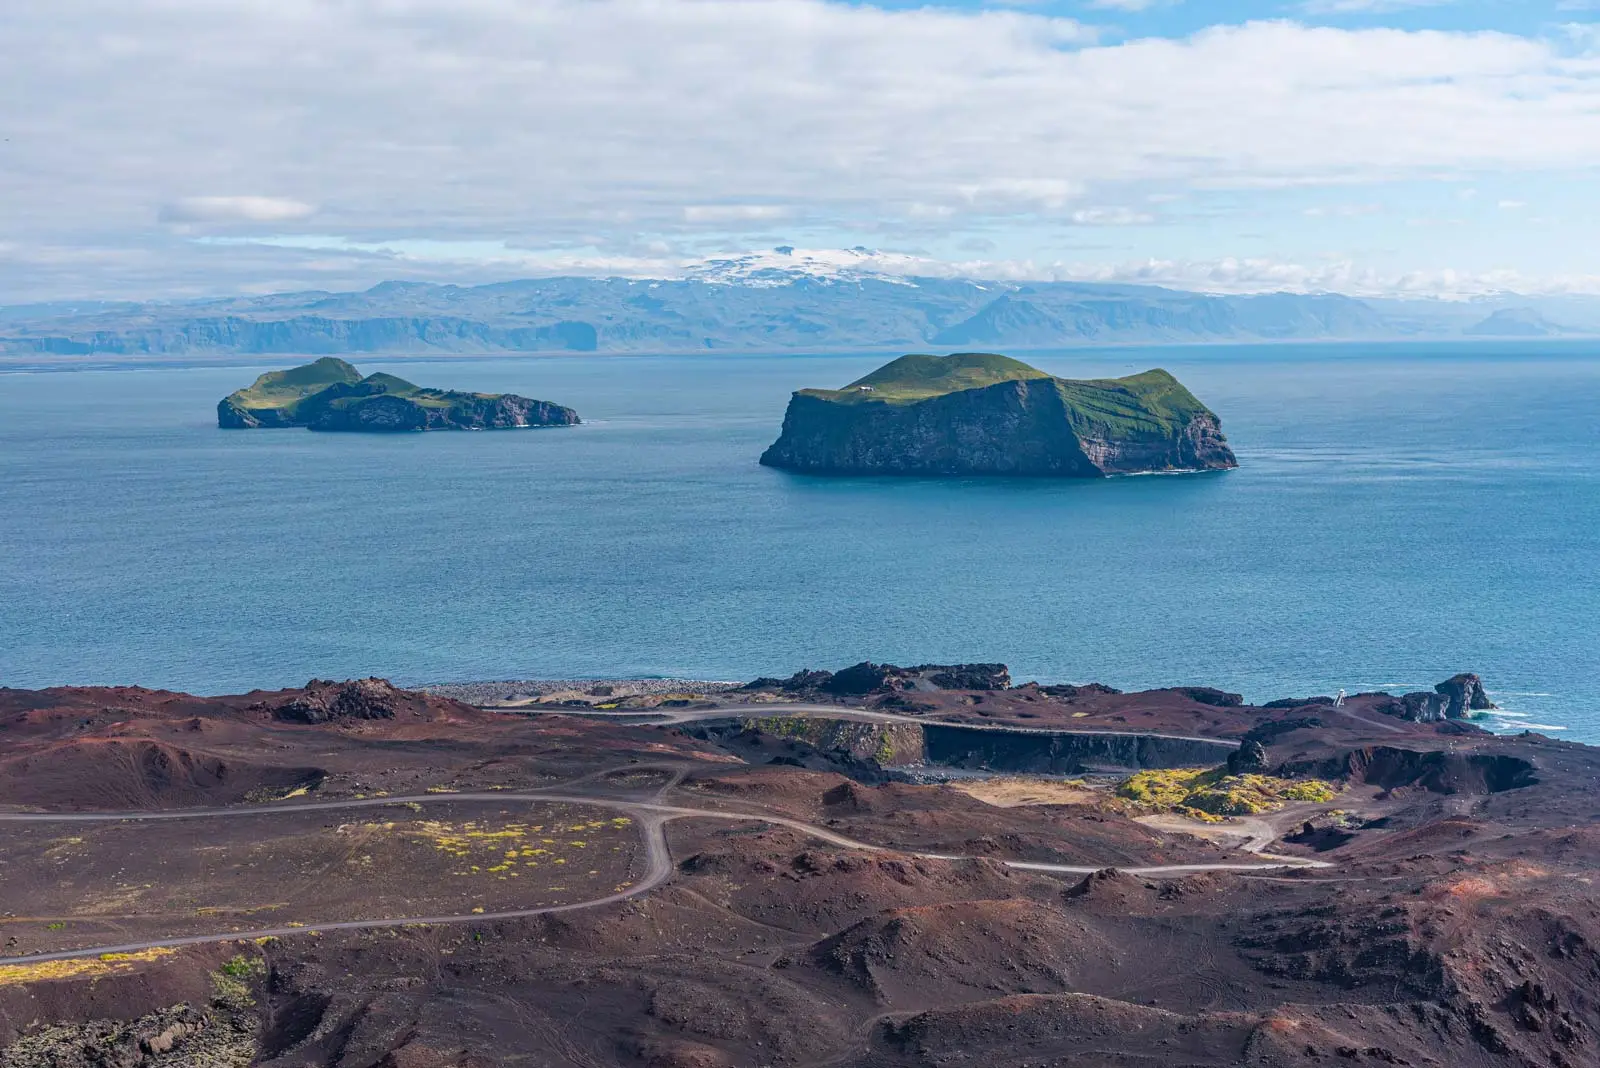 Volcanic landscape of Vestmannaeyjar archipelago of Iceland